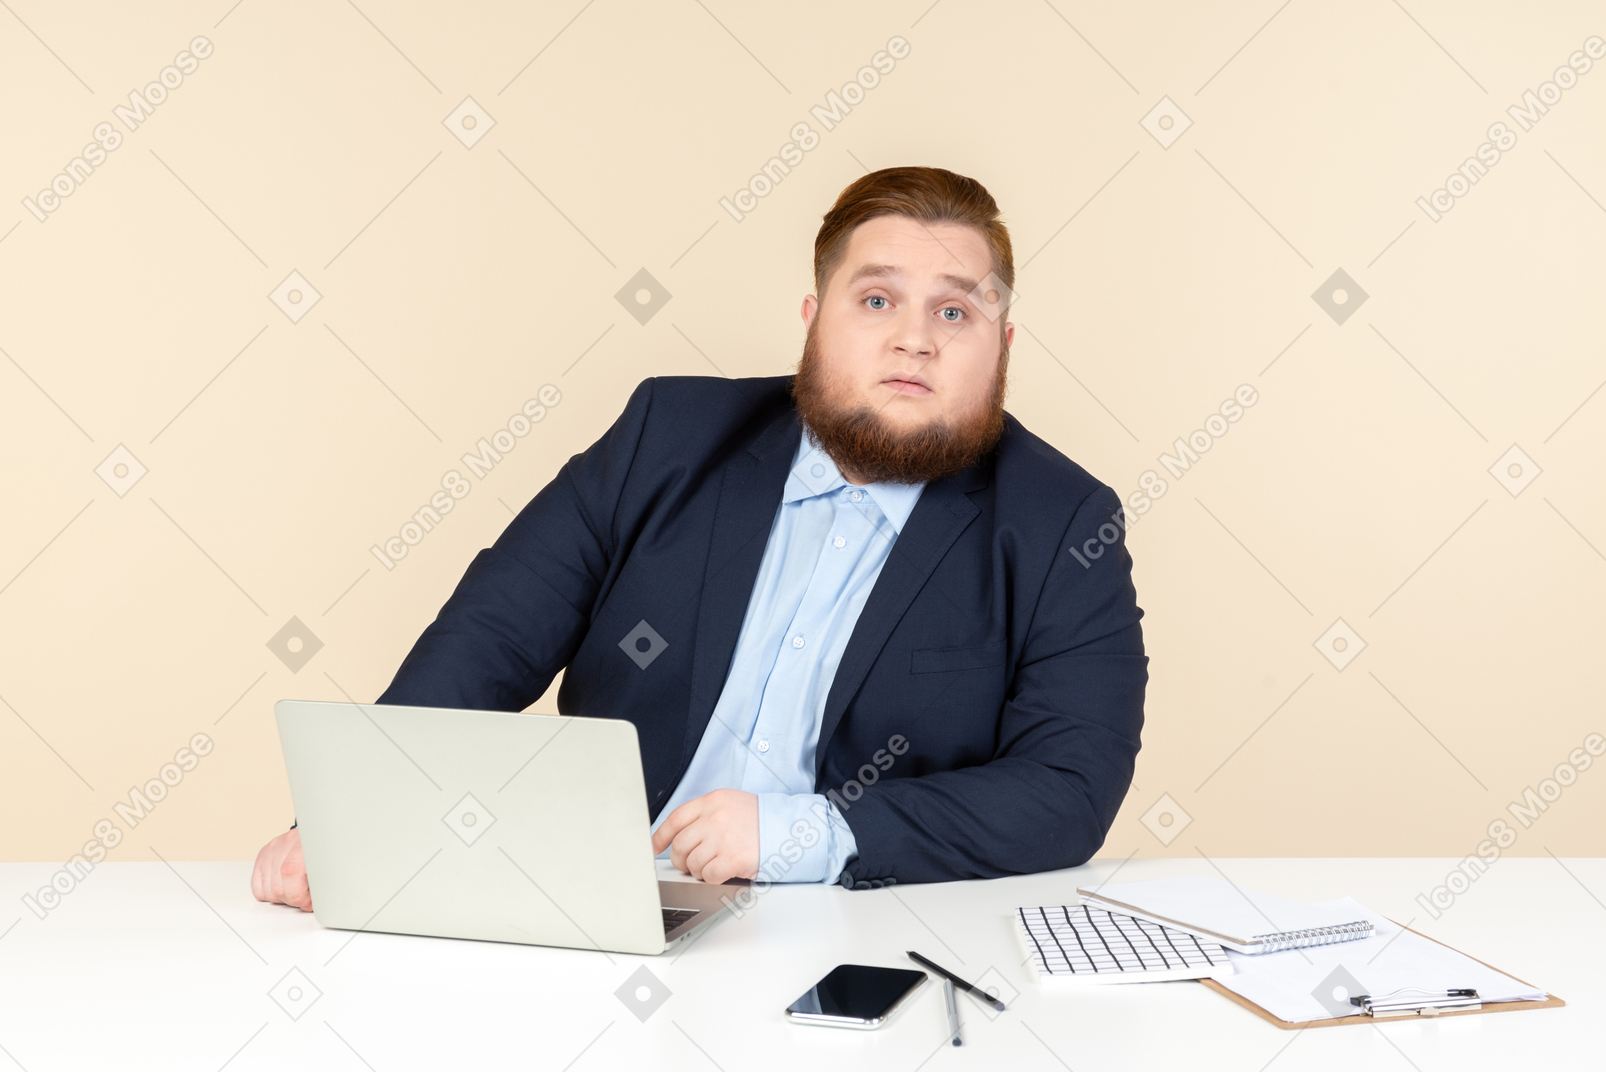 オフィスの机に座っている若い太りすぎの人